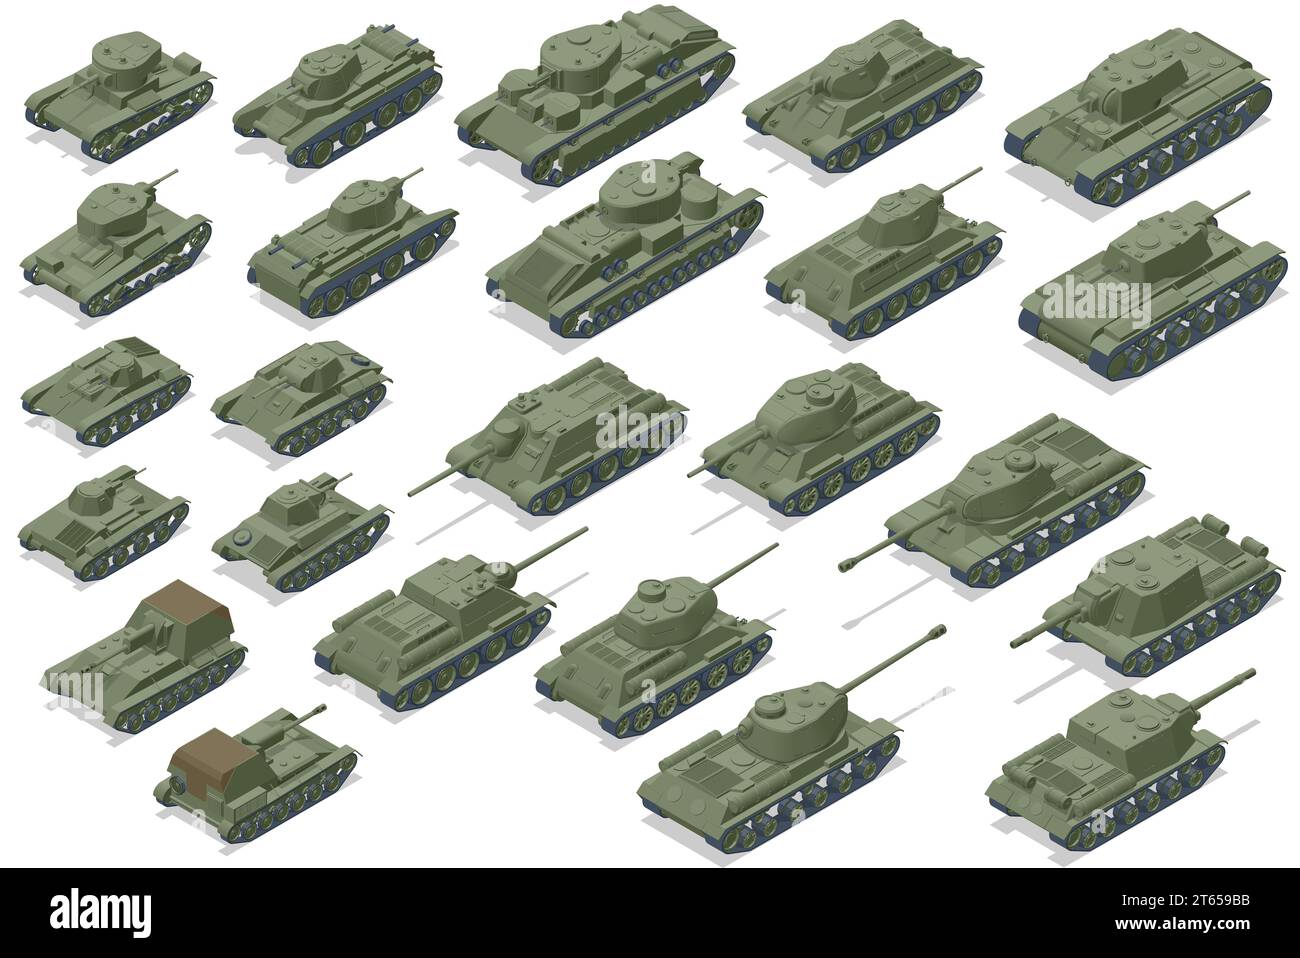 Icônes isométriques des chars de l'URSS. Véhicule blindé de combat conçu pour le combat de première ligne, avec une forte puissance de feu Illustration de Vecteur